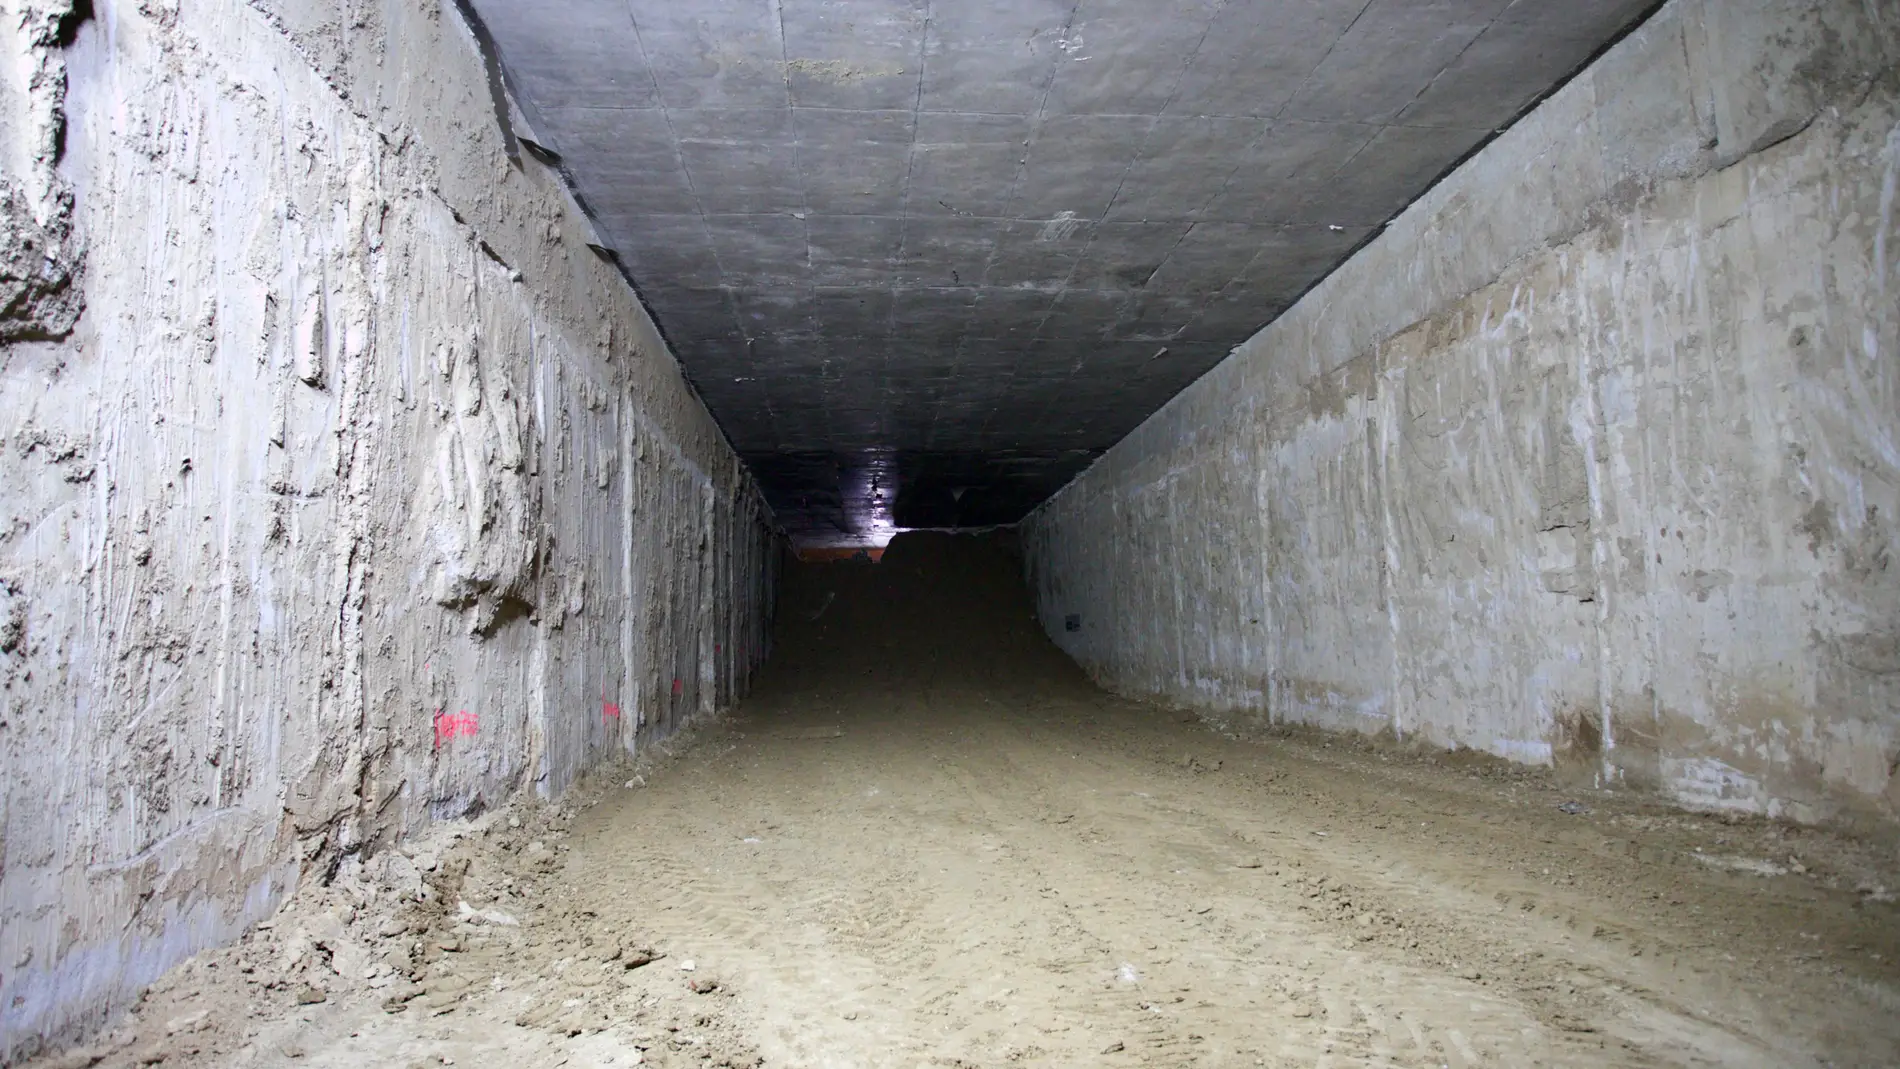 Adif culmina la excavación del túnel que integra la línea de alta velocidad en Alcantarilla